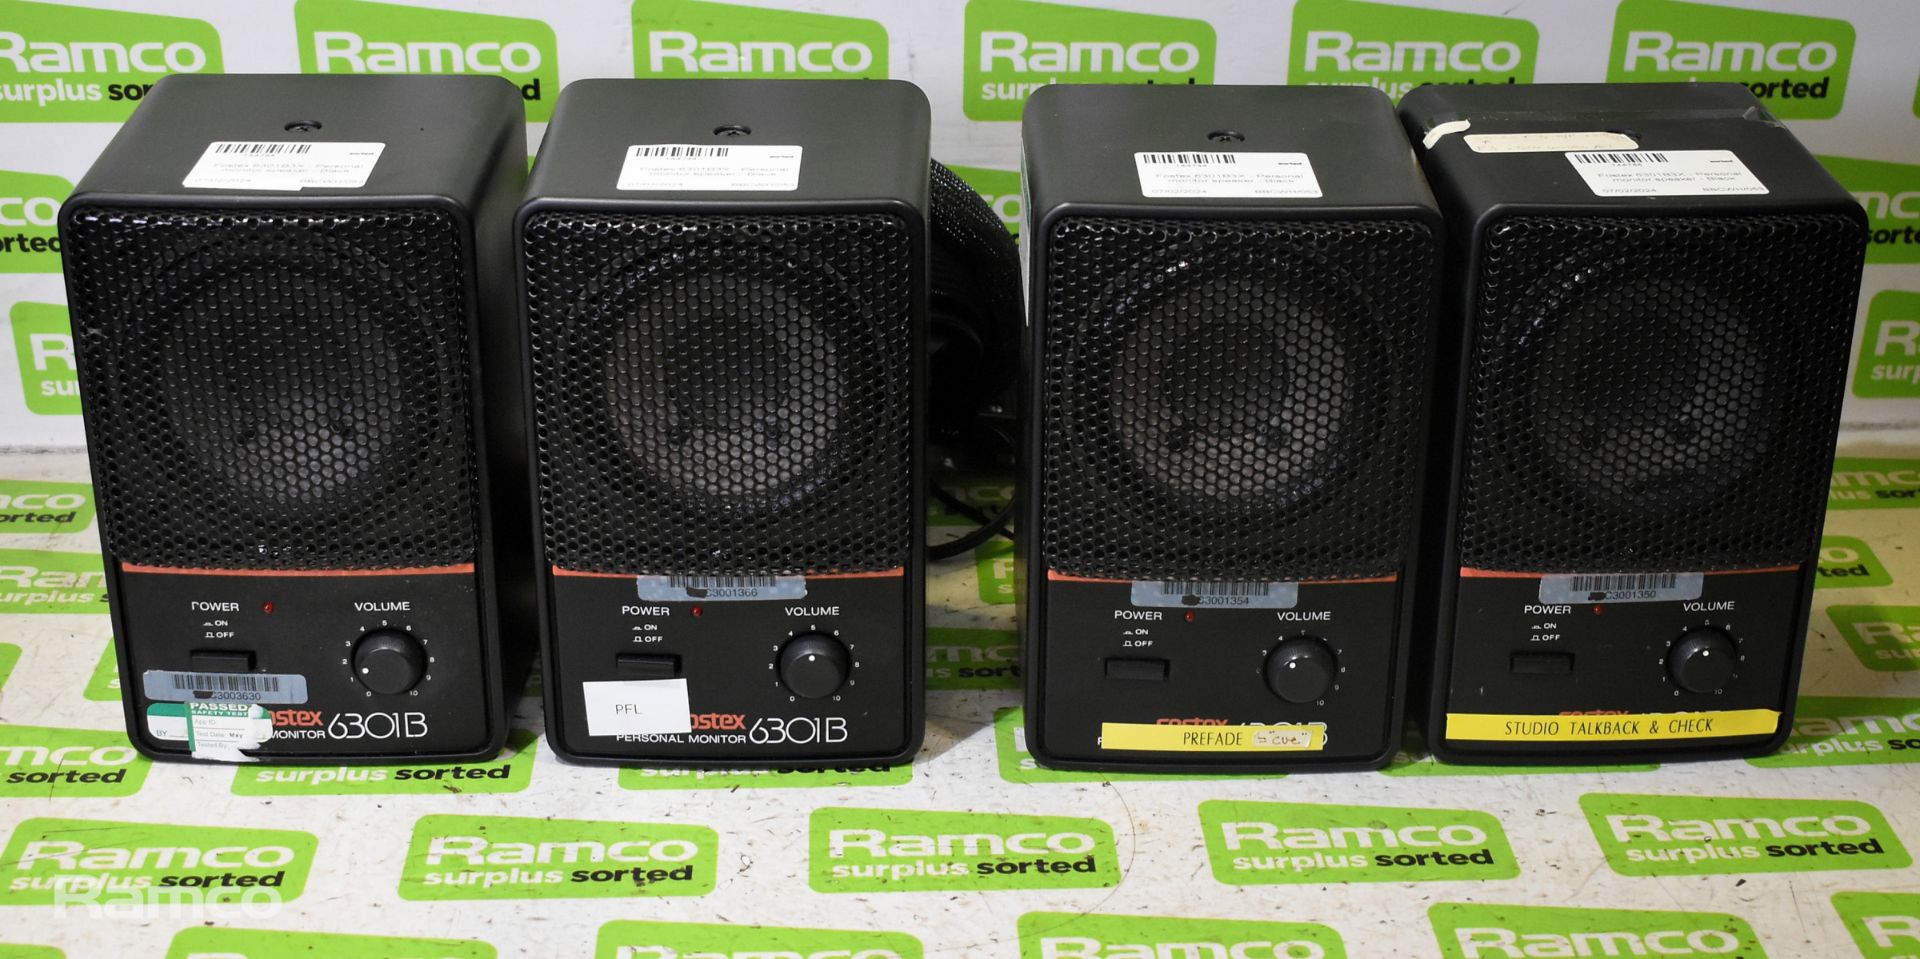 4x Fostex 6301B3X Personal monitor speakers - Black